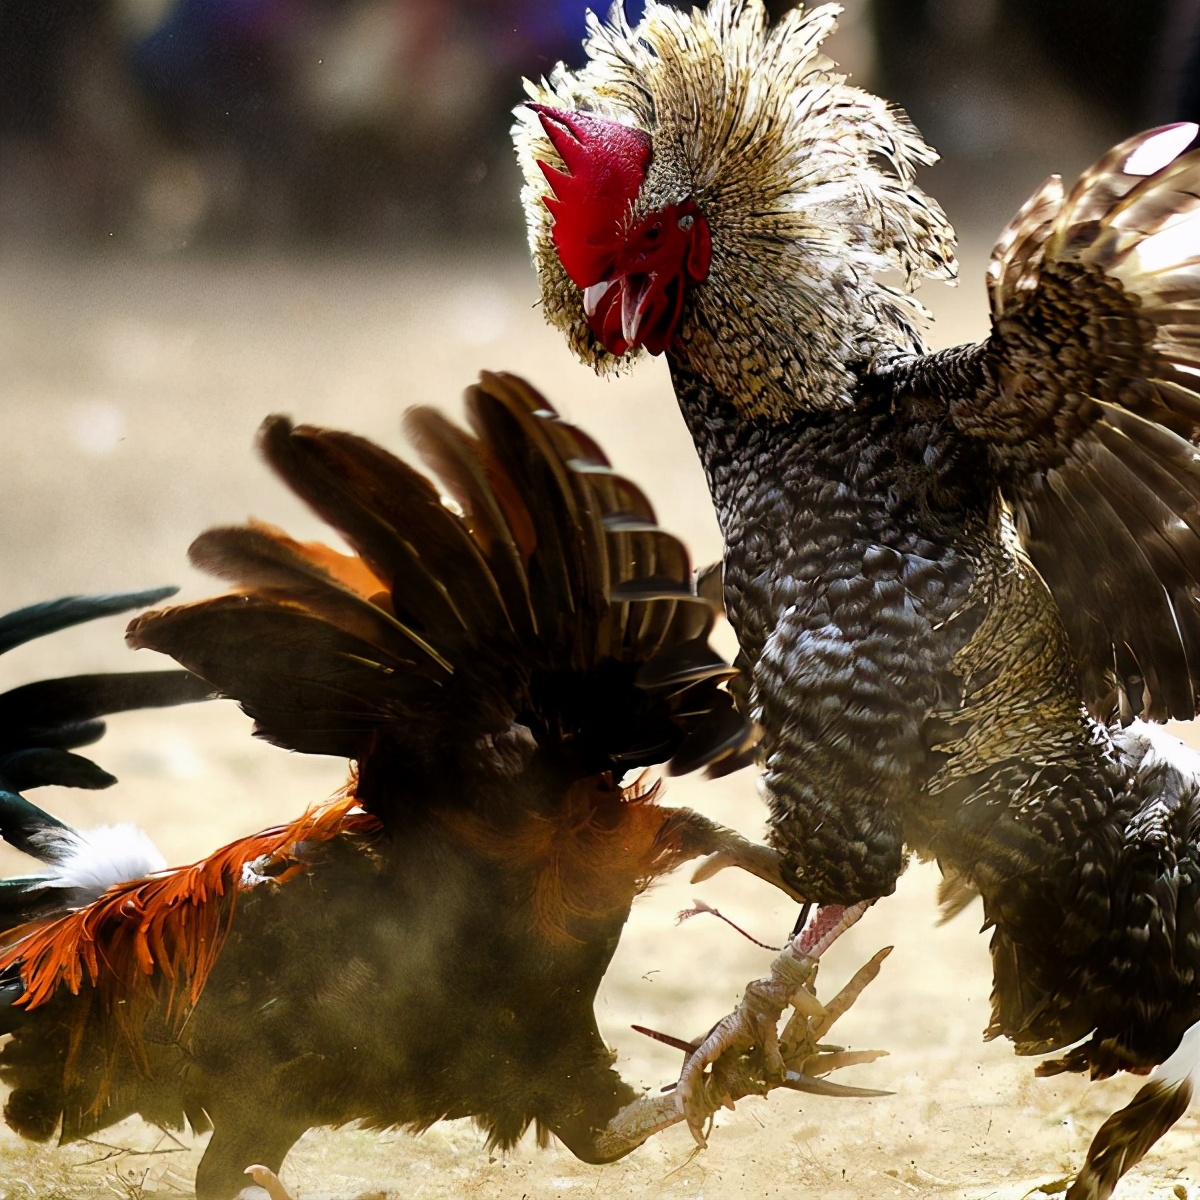 《鸡征服世界2》所有宗教和文化里，鸡都是正义的化身？鸡如何影响国家的统治？ - 知乎